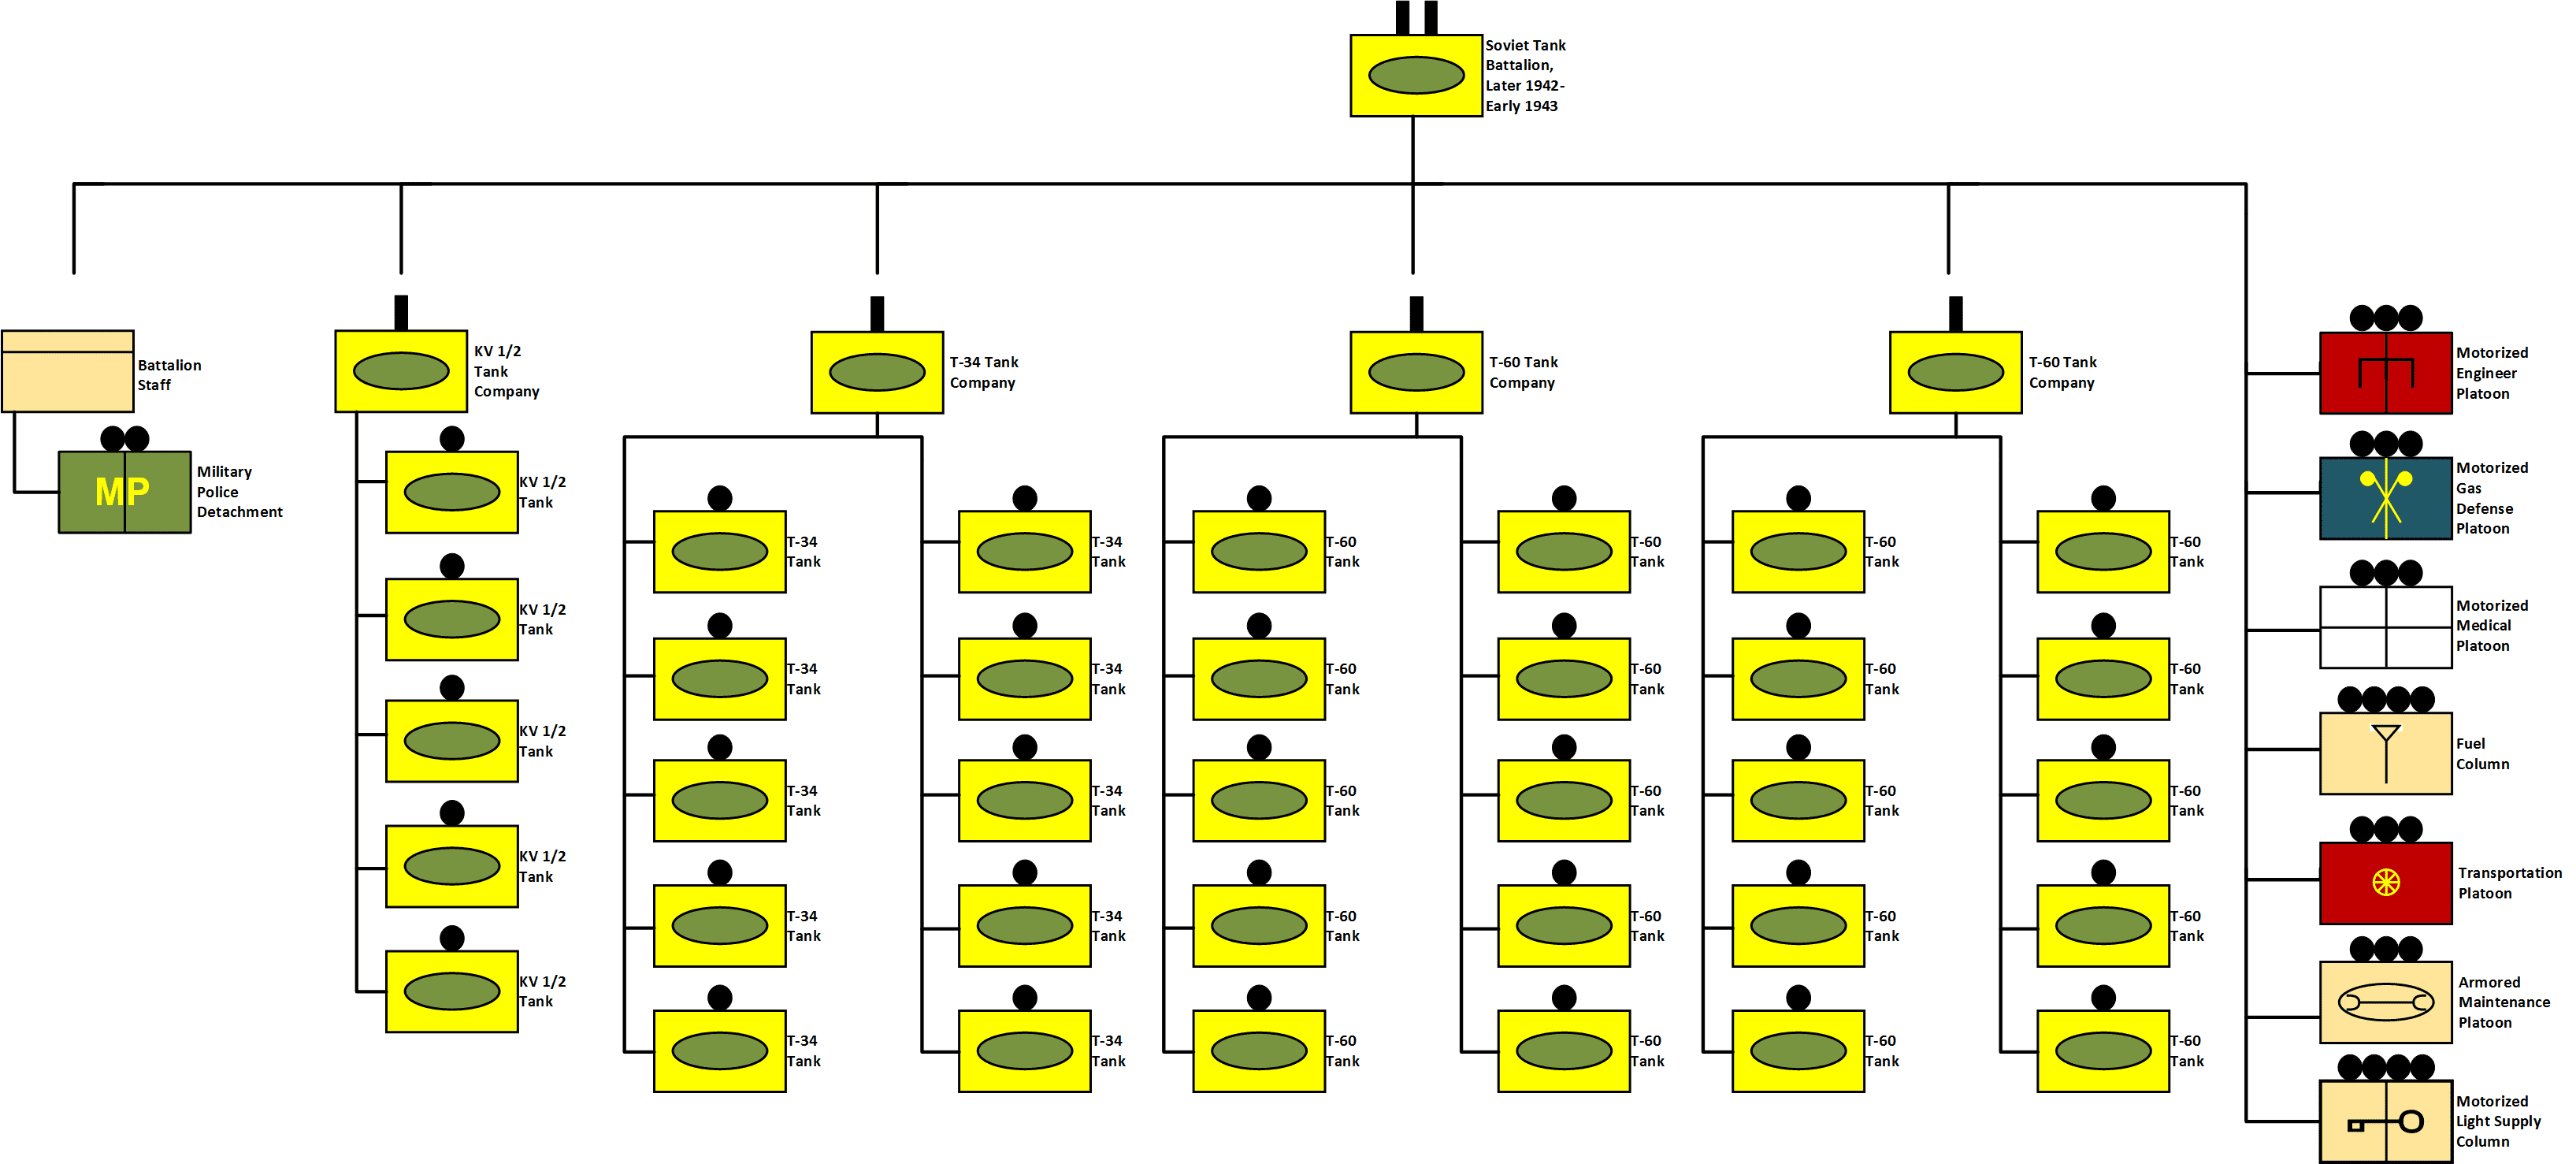 التشغيل العملياتى والهيكل التنظيمى لسلاح المدرعات السوفيتى فى الحرب العالمية الثانية 21ccb585-7ea4-4fbb-957e-e8918514a32f_1.776a0db36c4cb09195f70a1cc81cd5e3